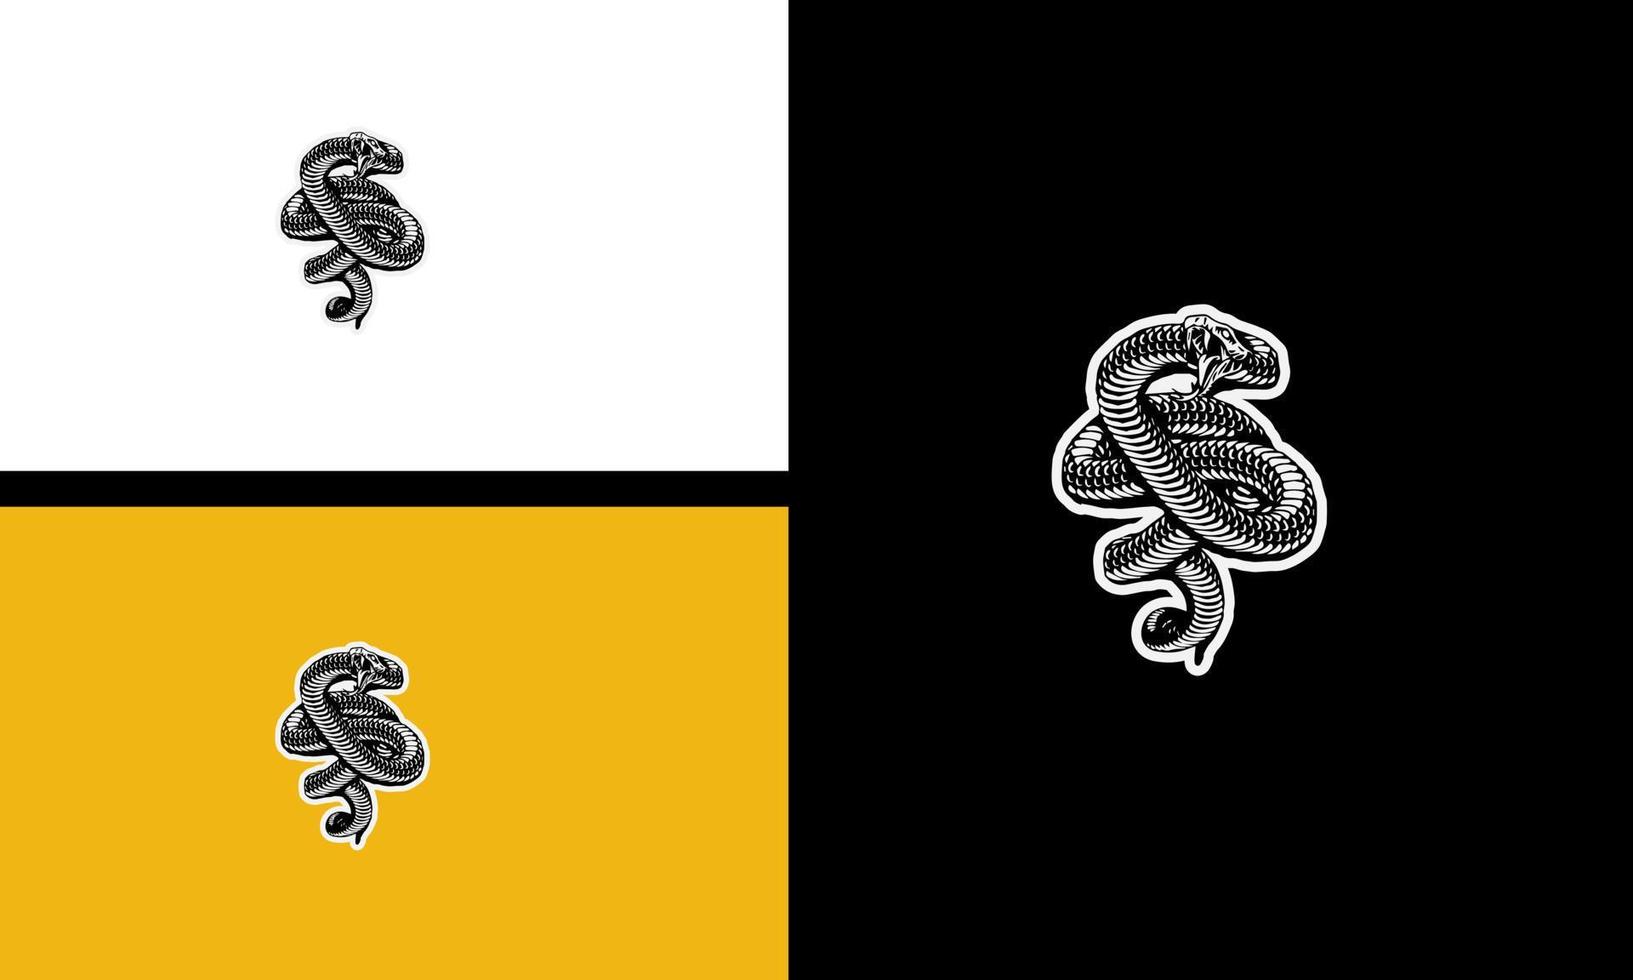 koning cobra hoektanden vector illustratie schets ontwerp